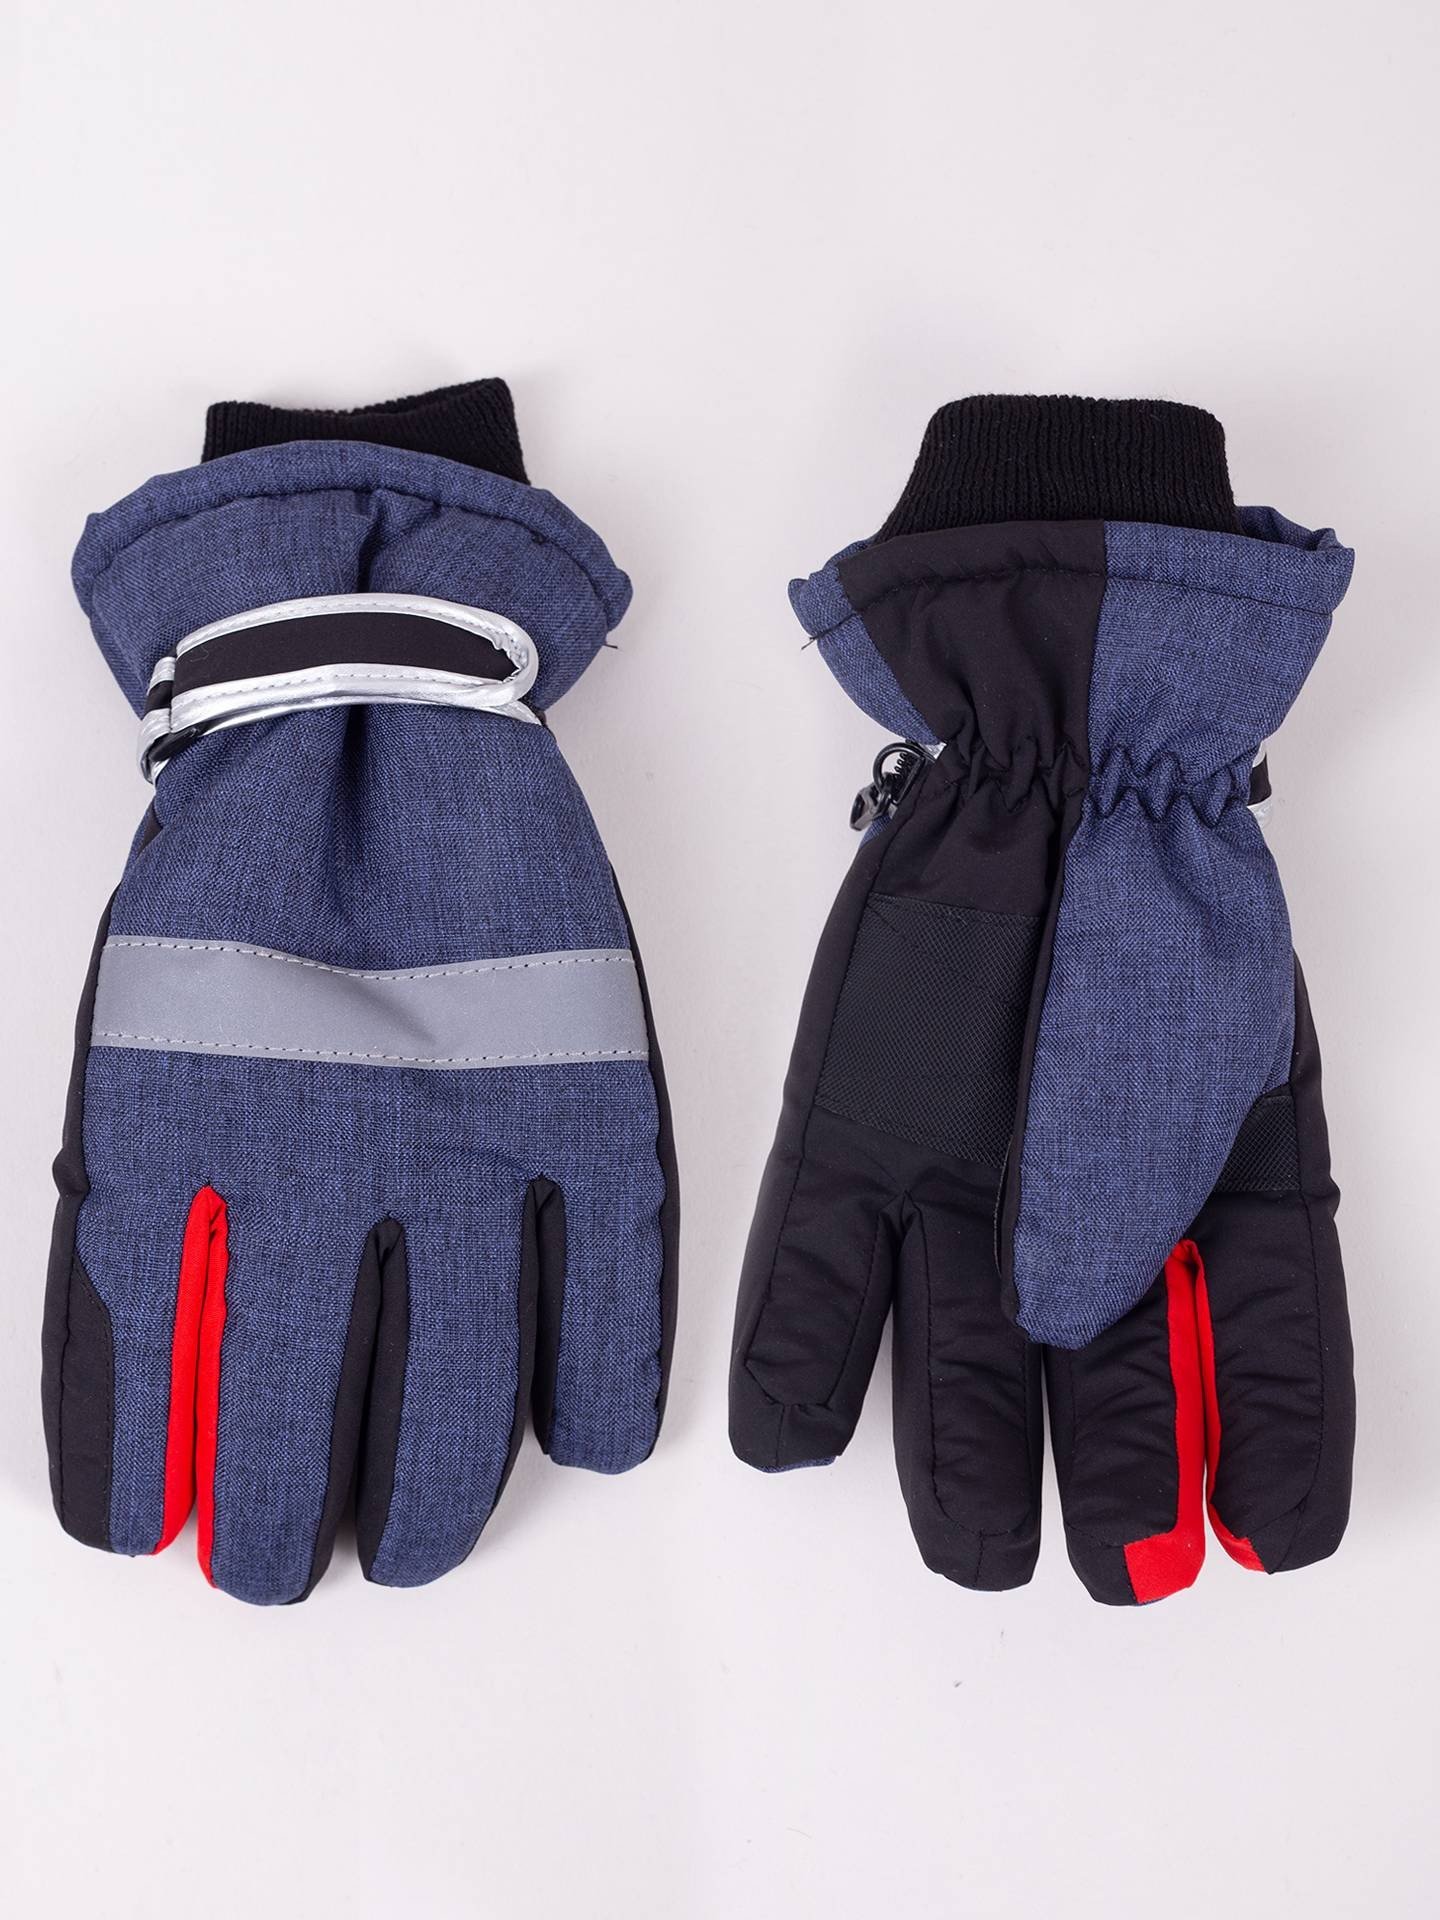 Yoclub Kids's Children'S Winter Ski Gloves REN-0298C-A150 Navy Blue